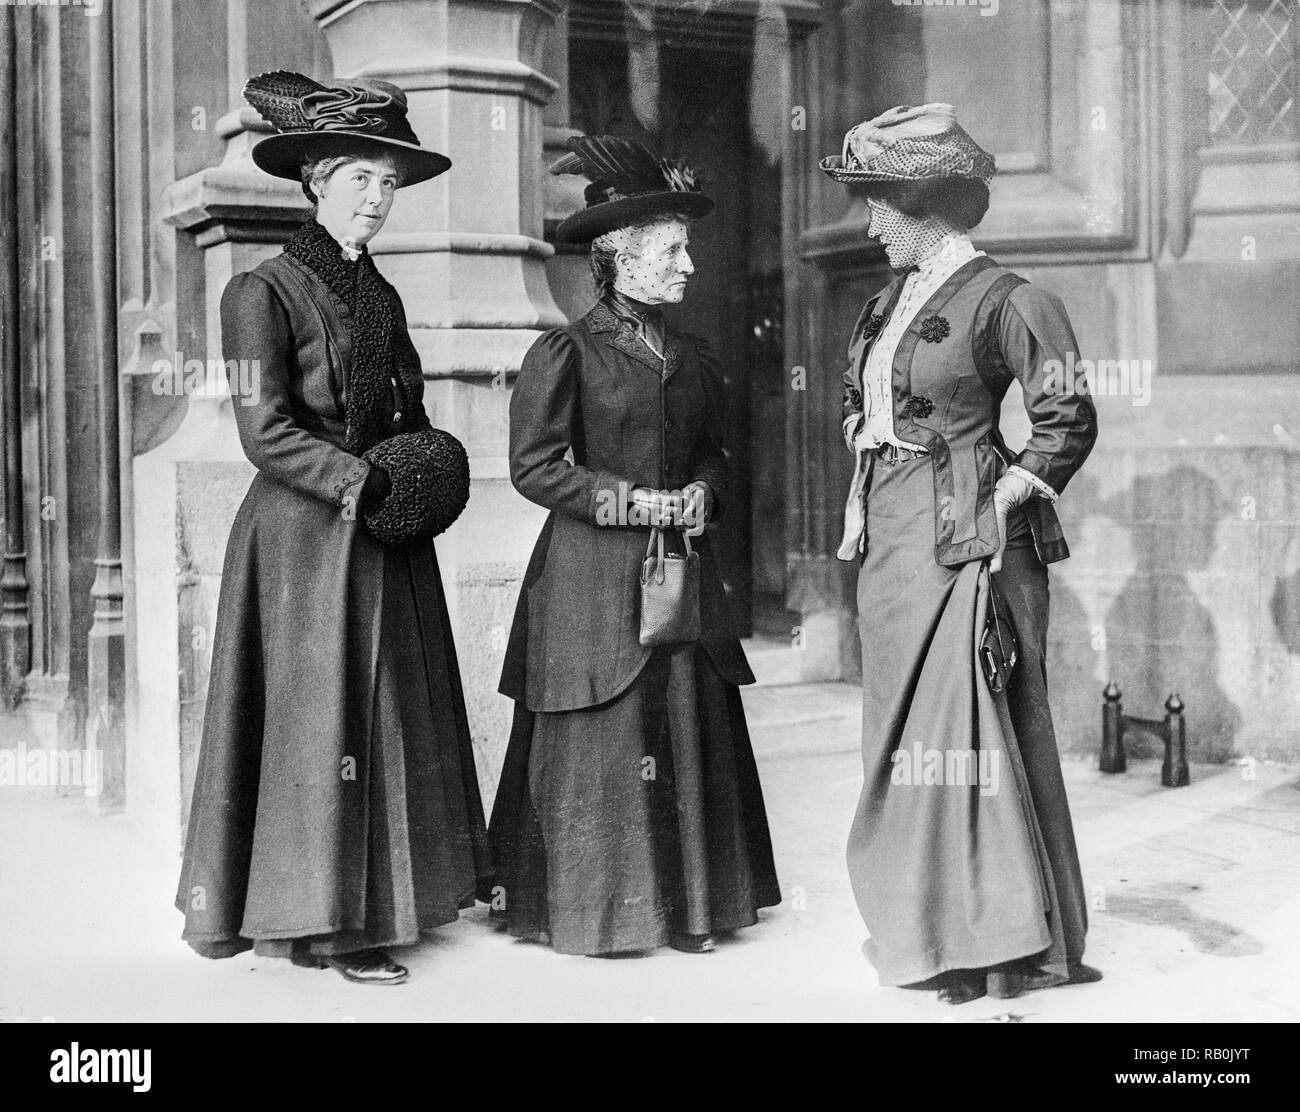 Drei Mitglieder der Suffragettenbewegung in London um 1913. Stockfoto